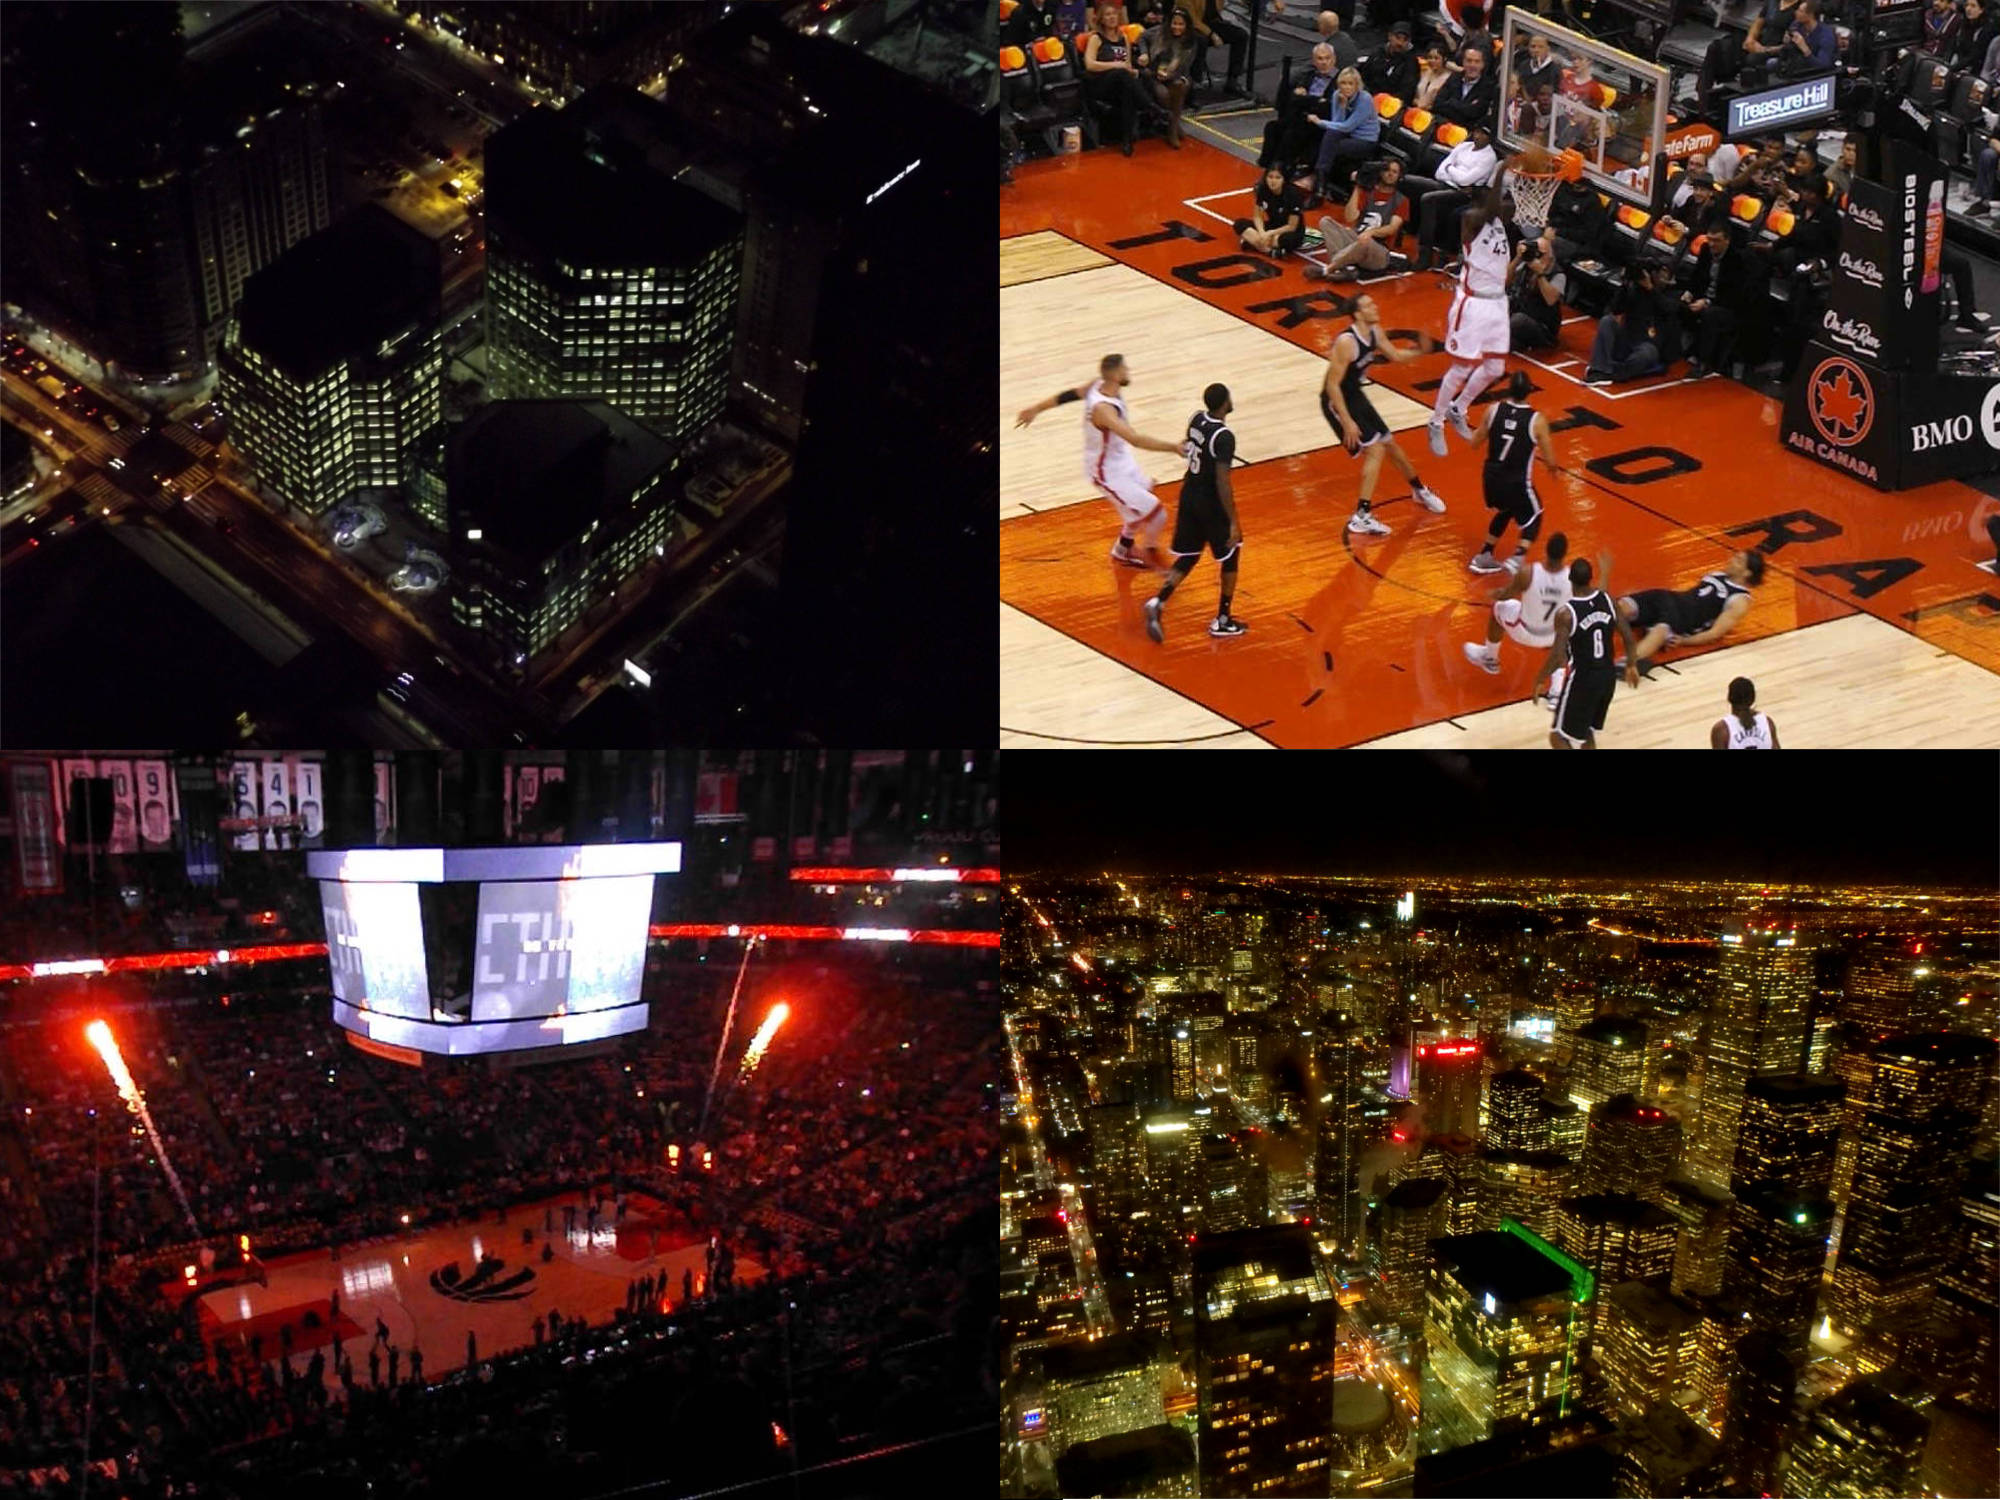 Toronto by night: Photo en bas à droite de mon collocataire de voyage.